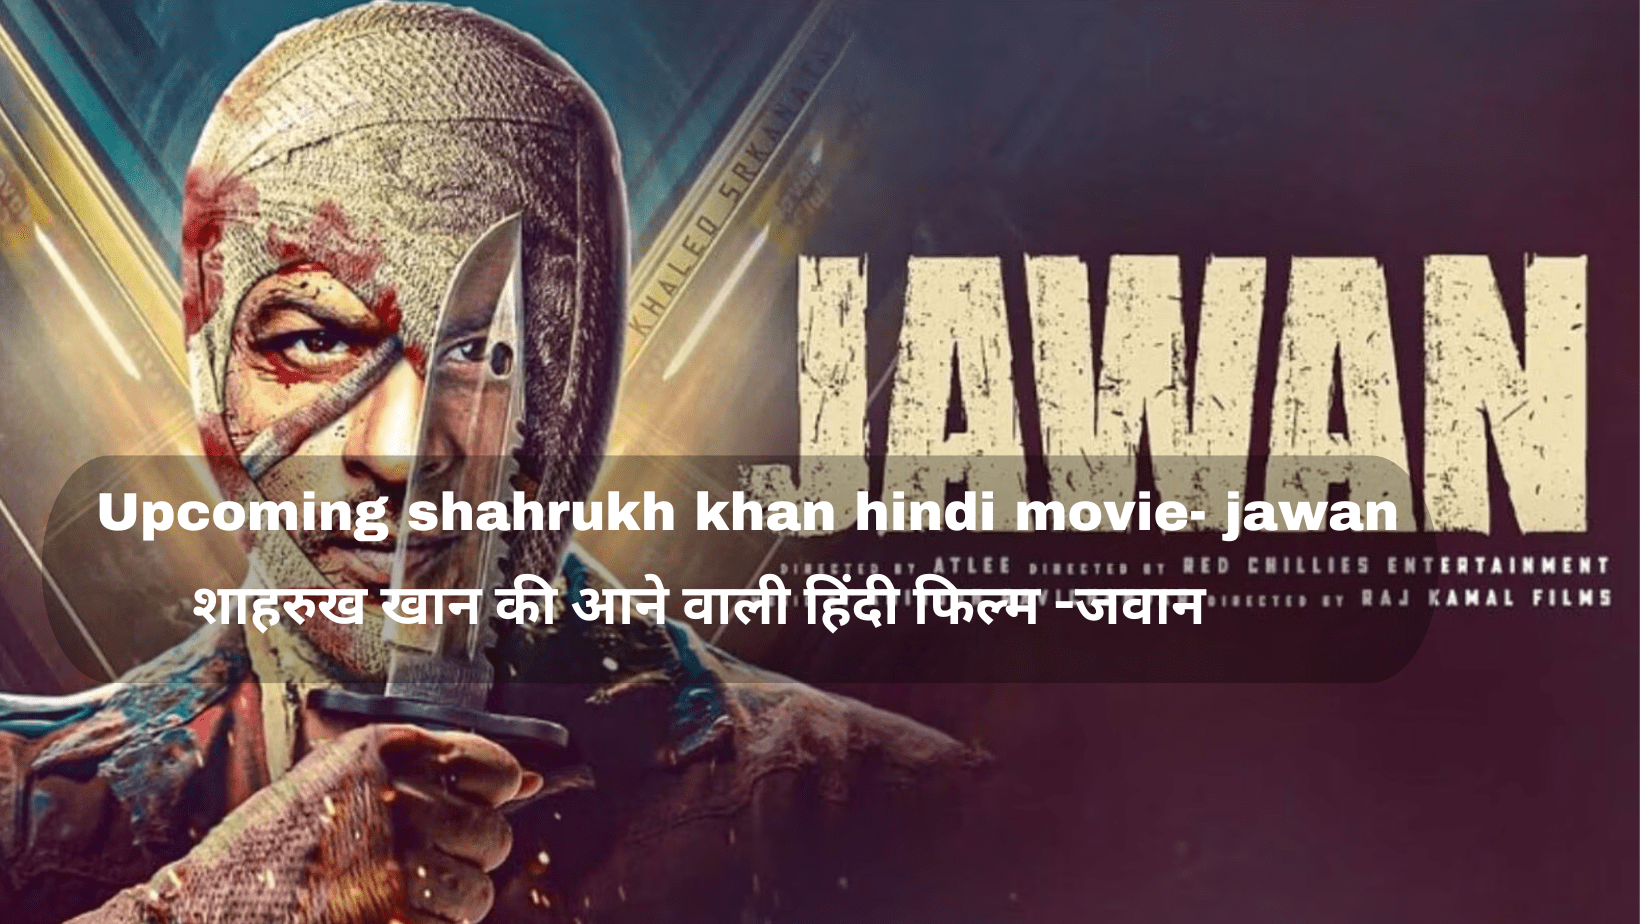 Upcoming shahrukh khan hindi movie- jawan